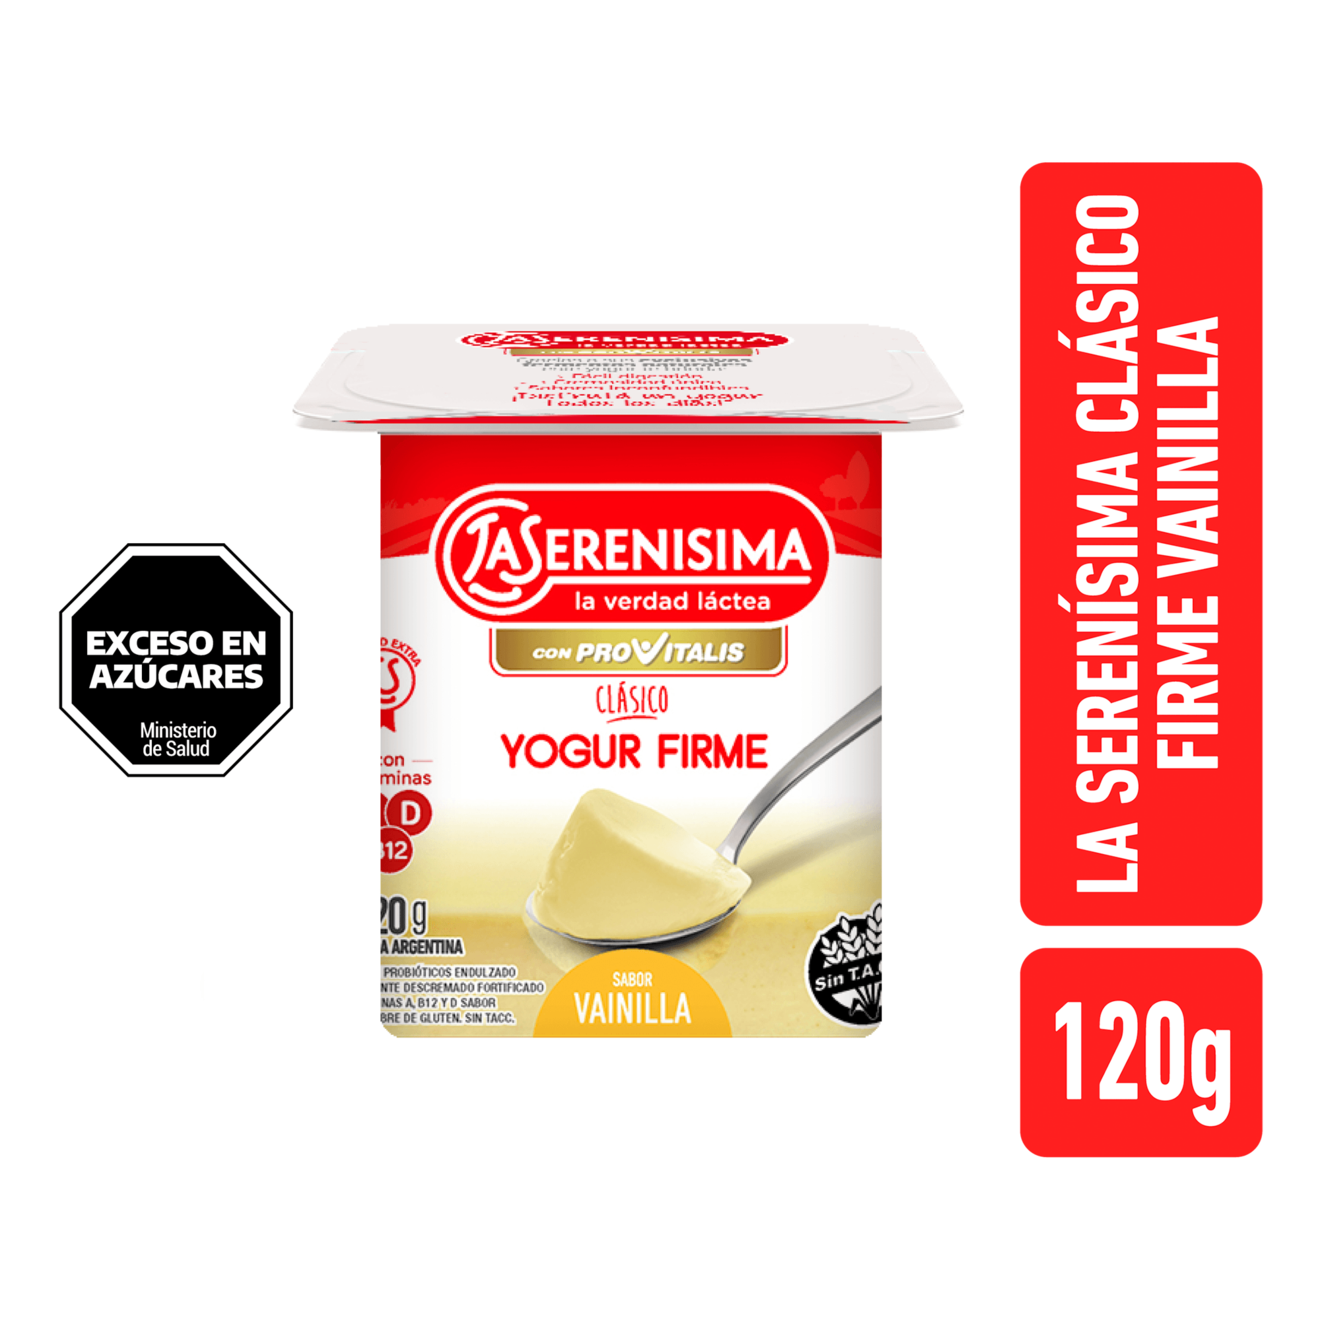 Oferta de Yogur Cremoso La Serenisima Vainilla 120 gr por $553,99 en Supermercados Comodin